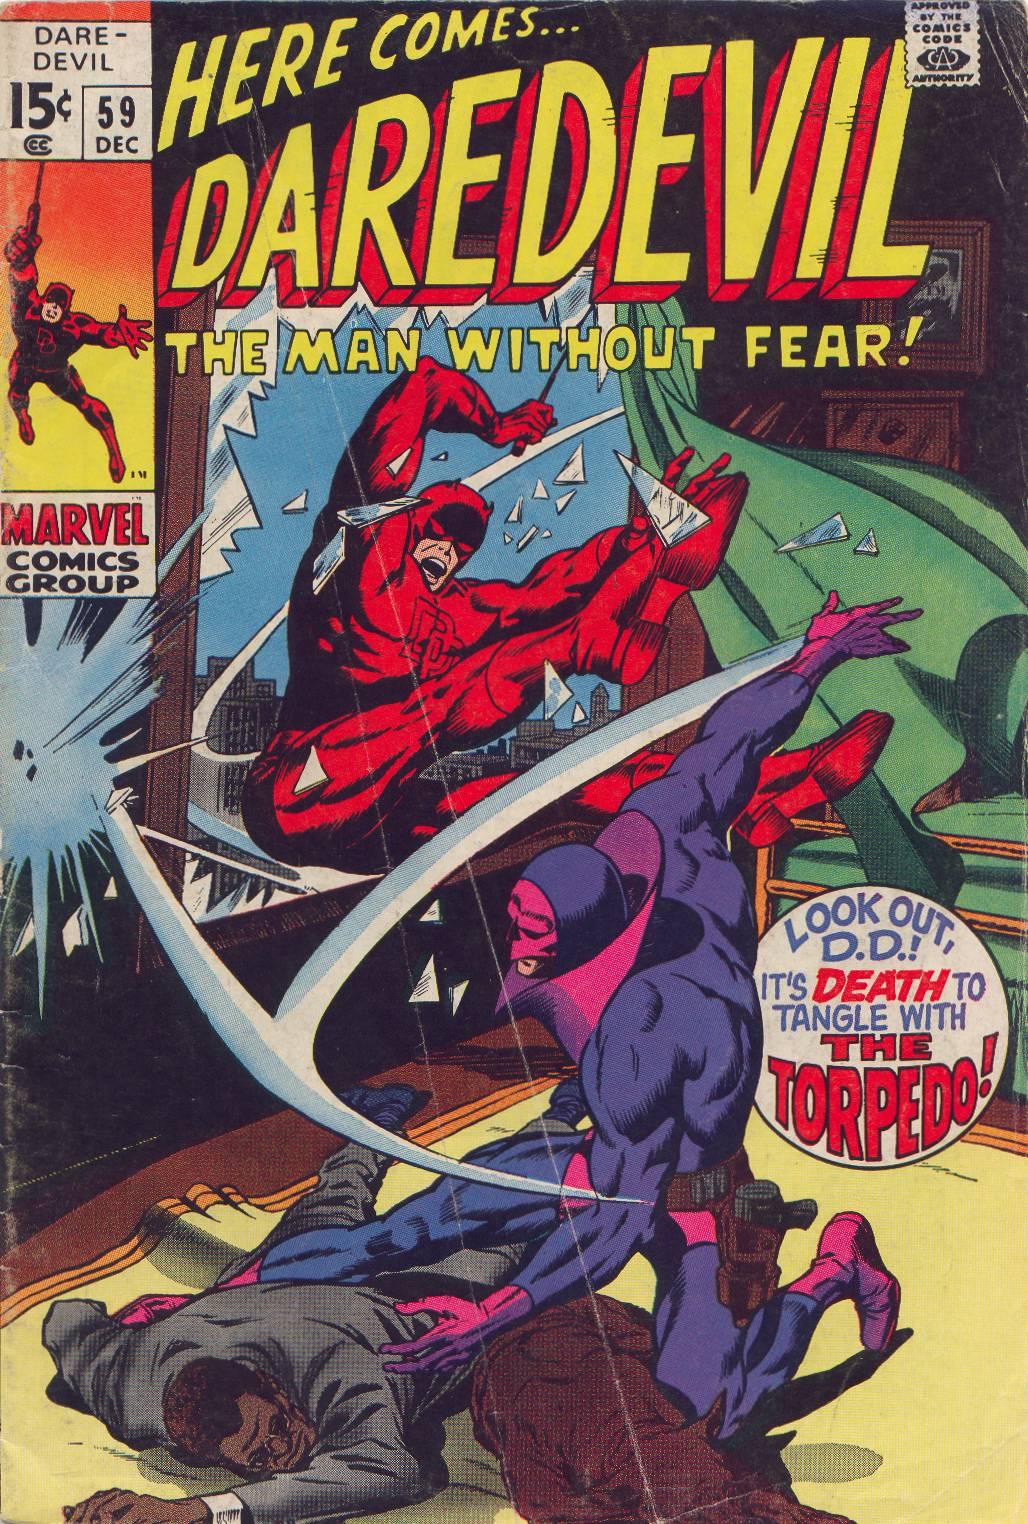 Daredevil Vol. 1 #59